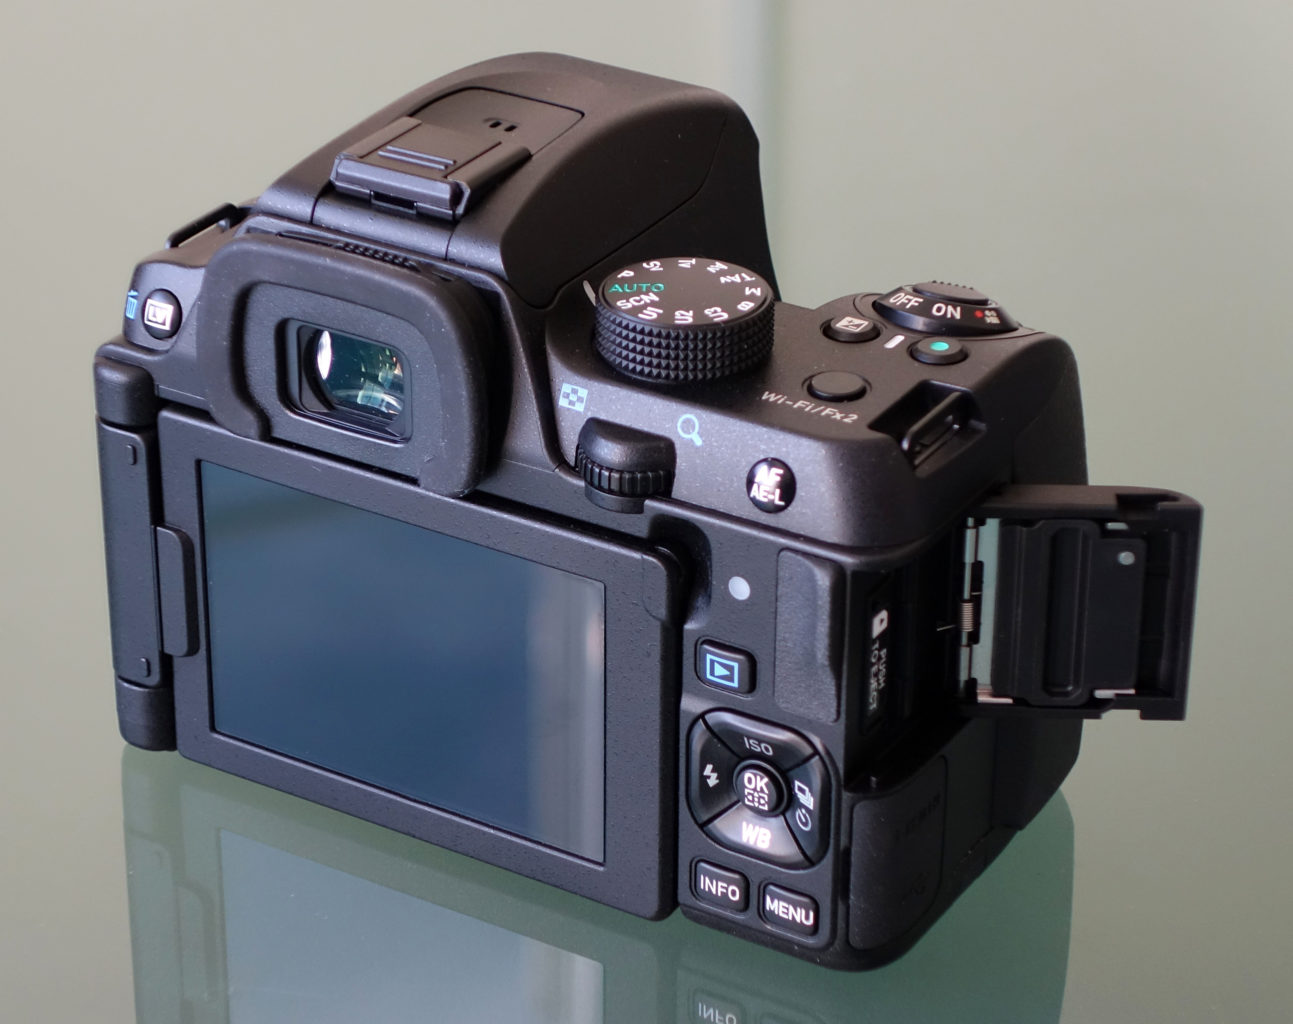 Best DSLR camera for Beginners